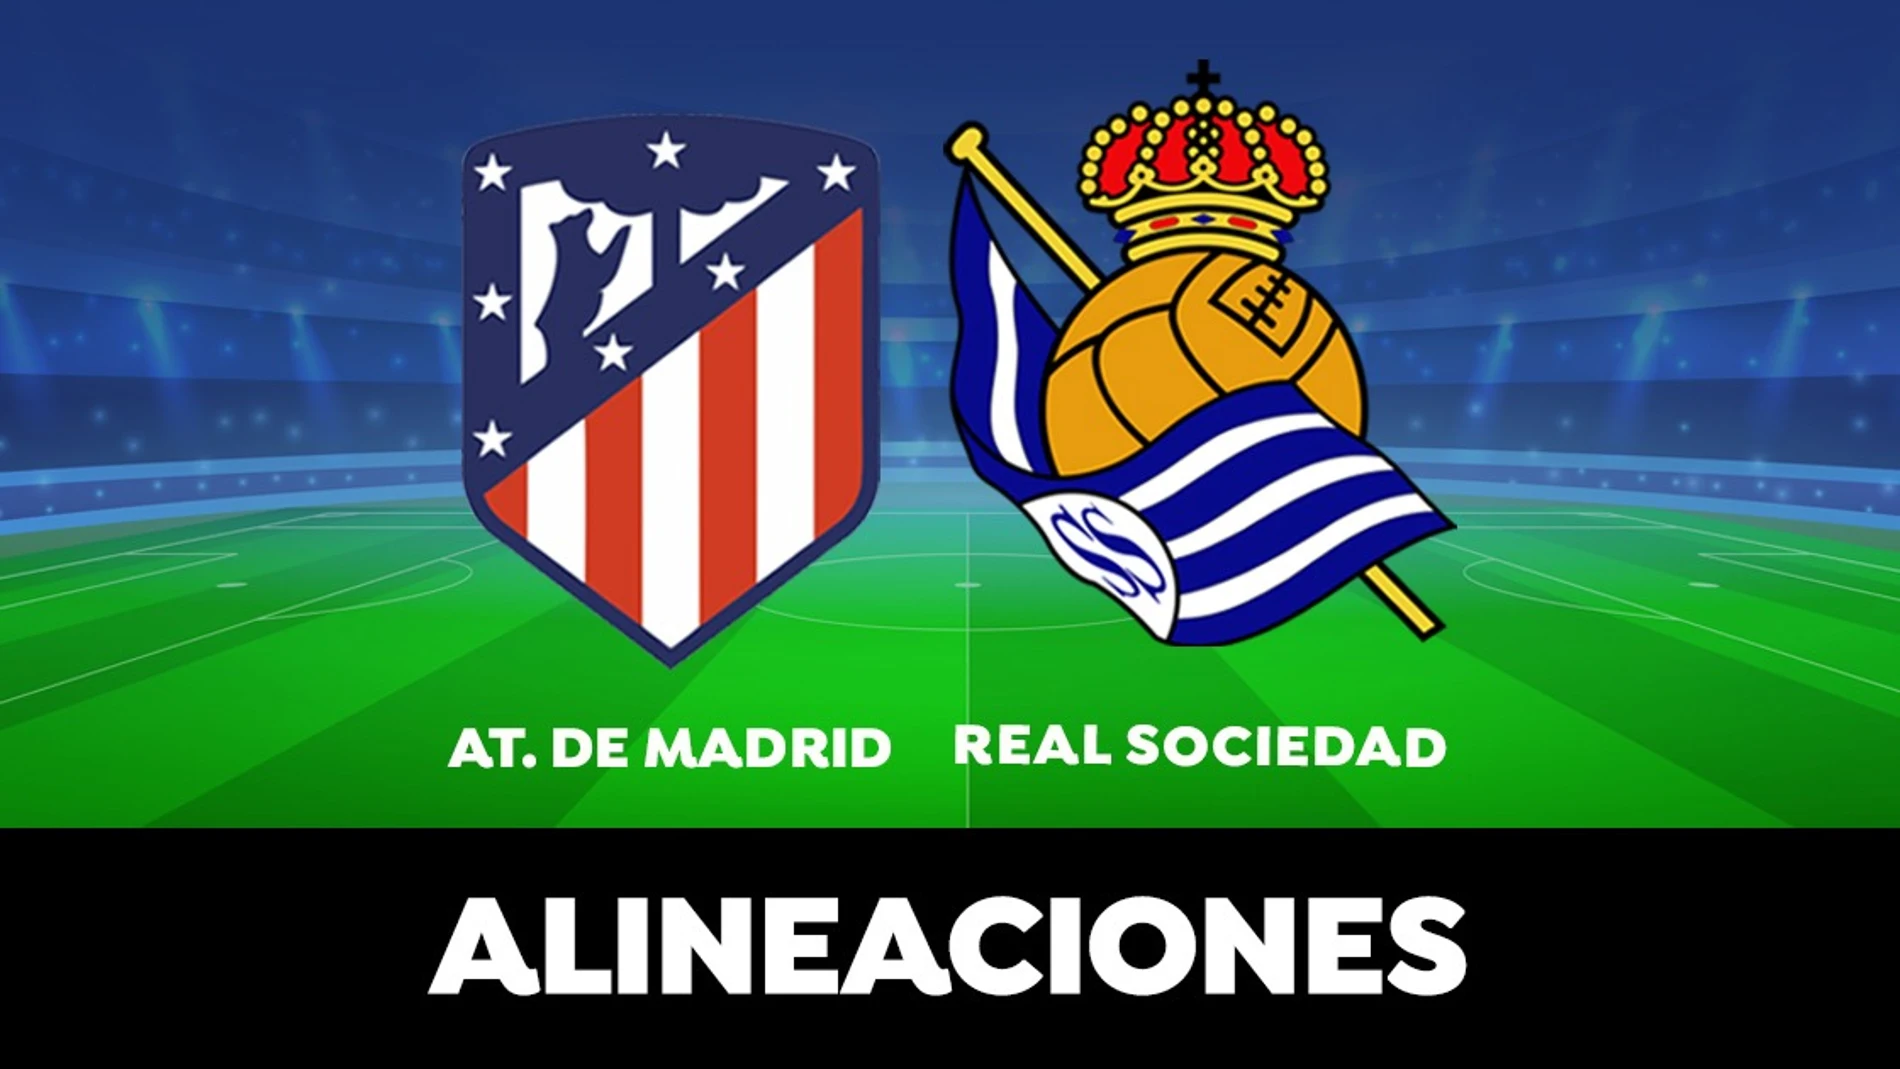 Alineación del Atlético de Madrid hoy contra la Real Sociedad en el partido de la Liga Santander